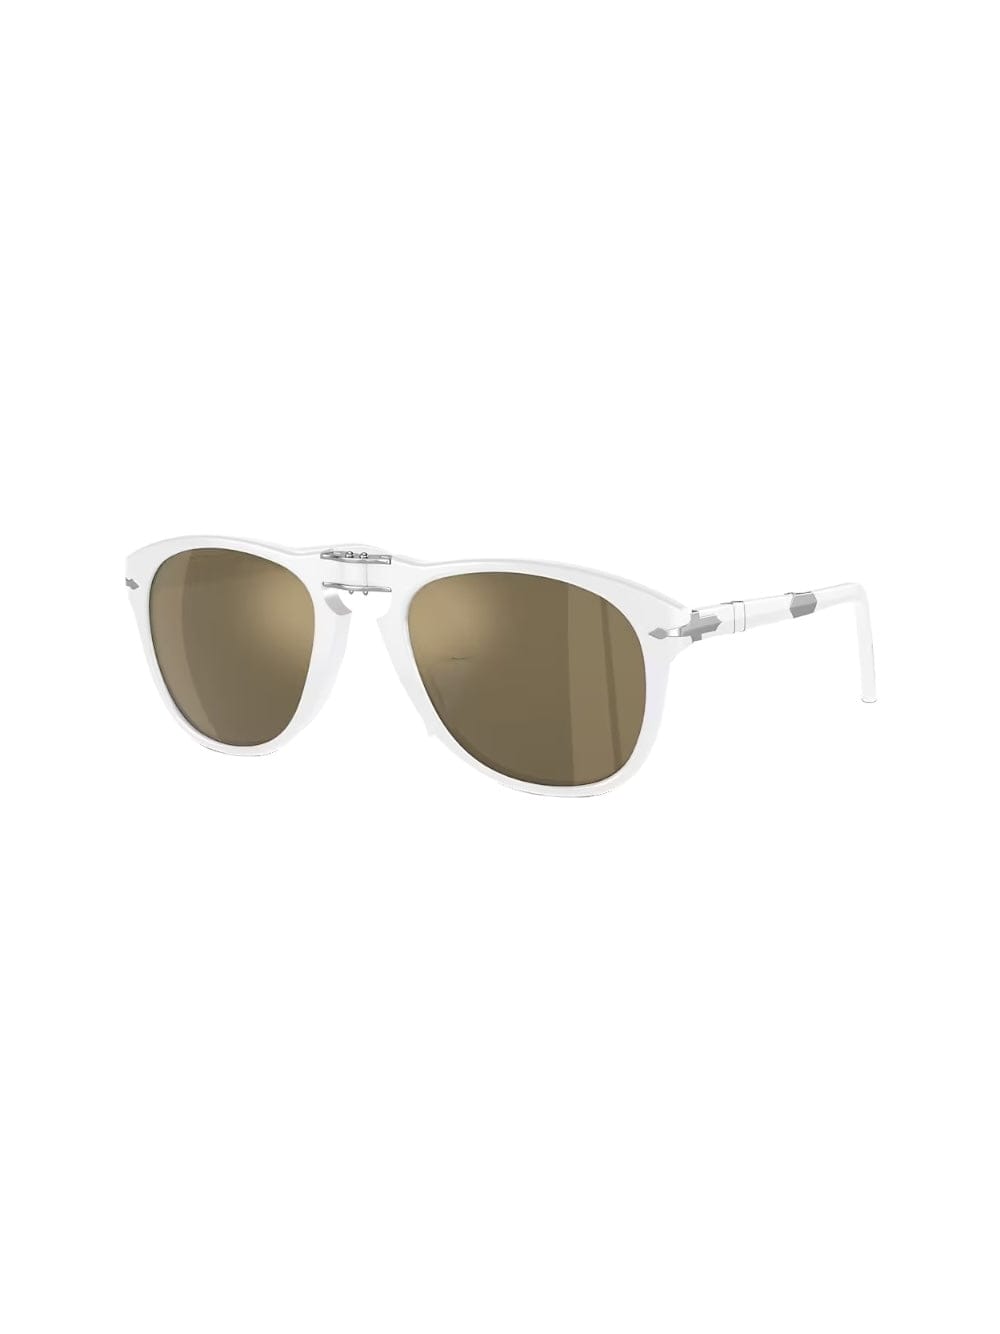 714 - X Le Mans - Ivory Sunglasses